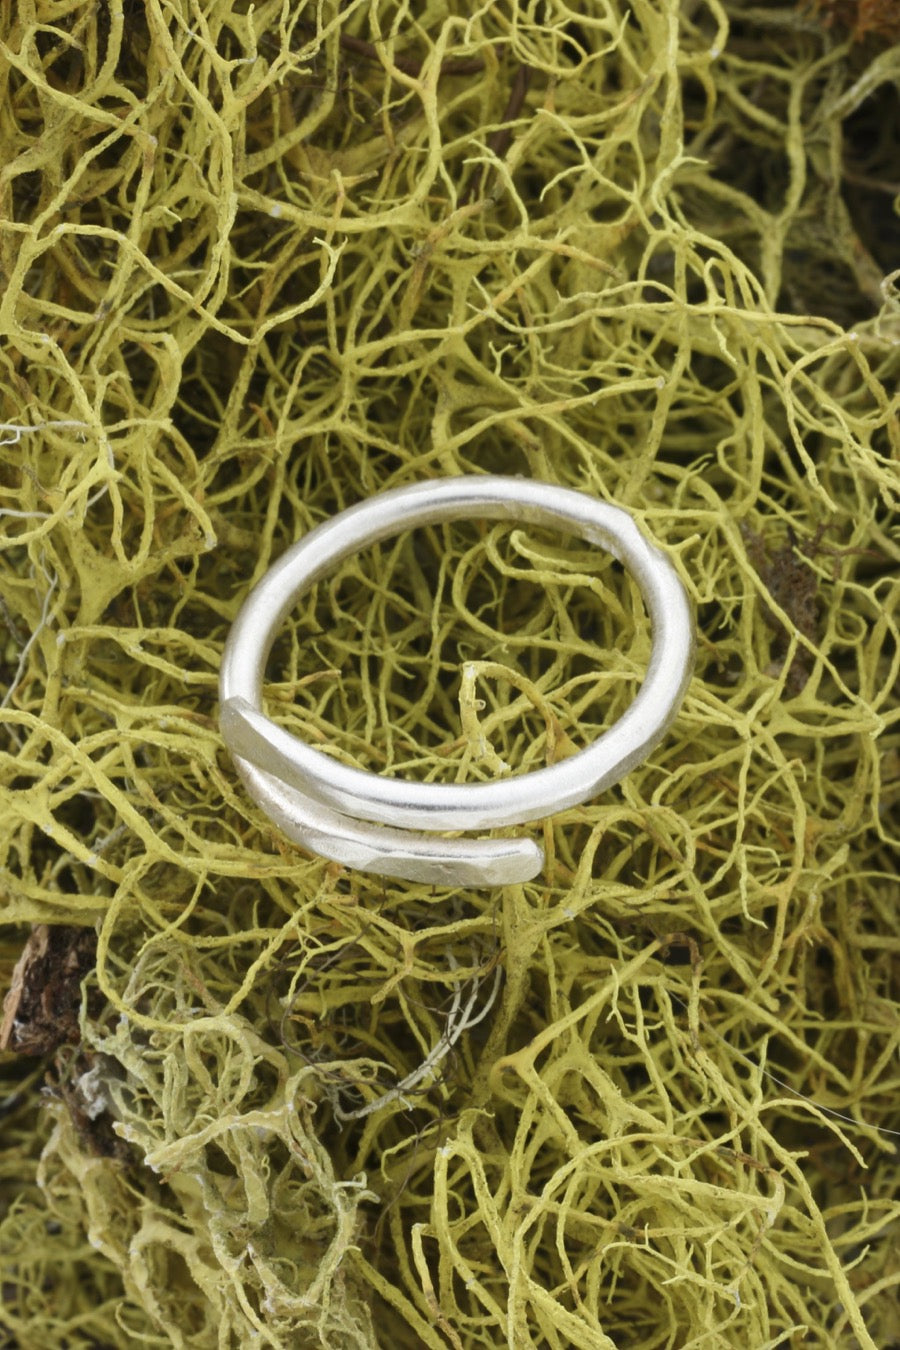 Sterling Adjustable Ring